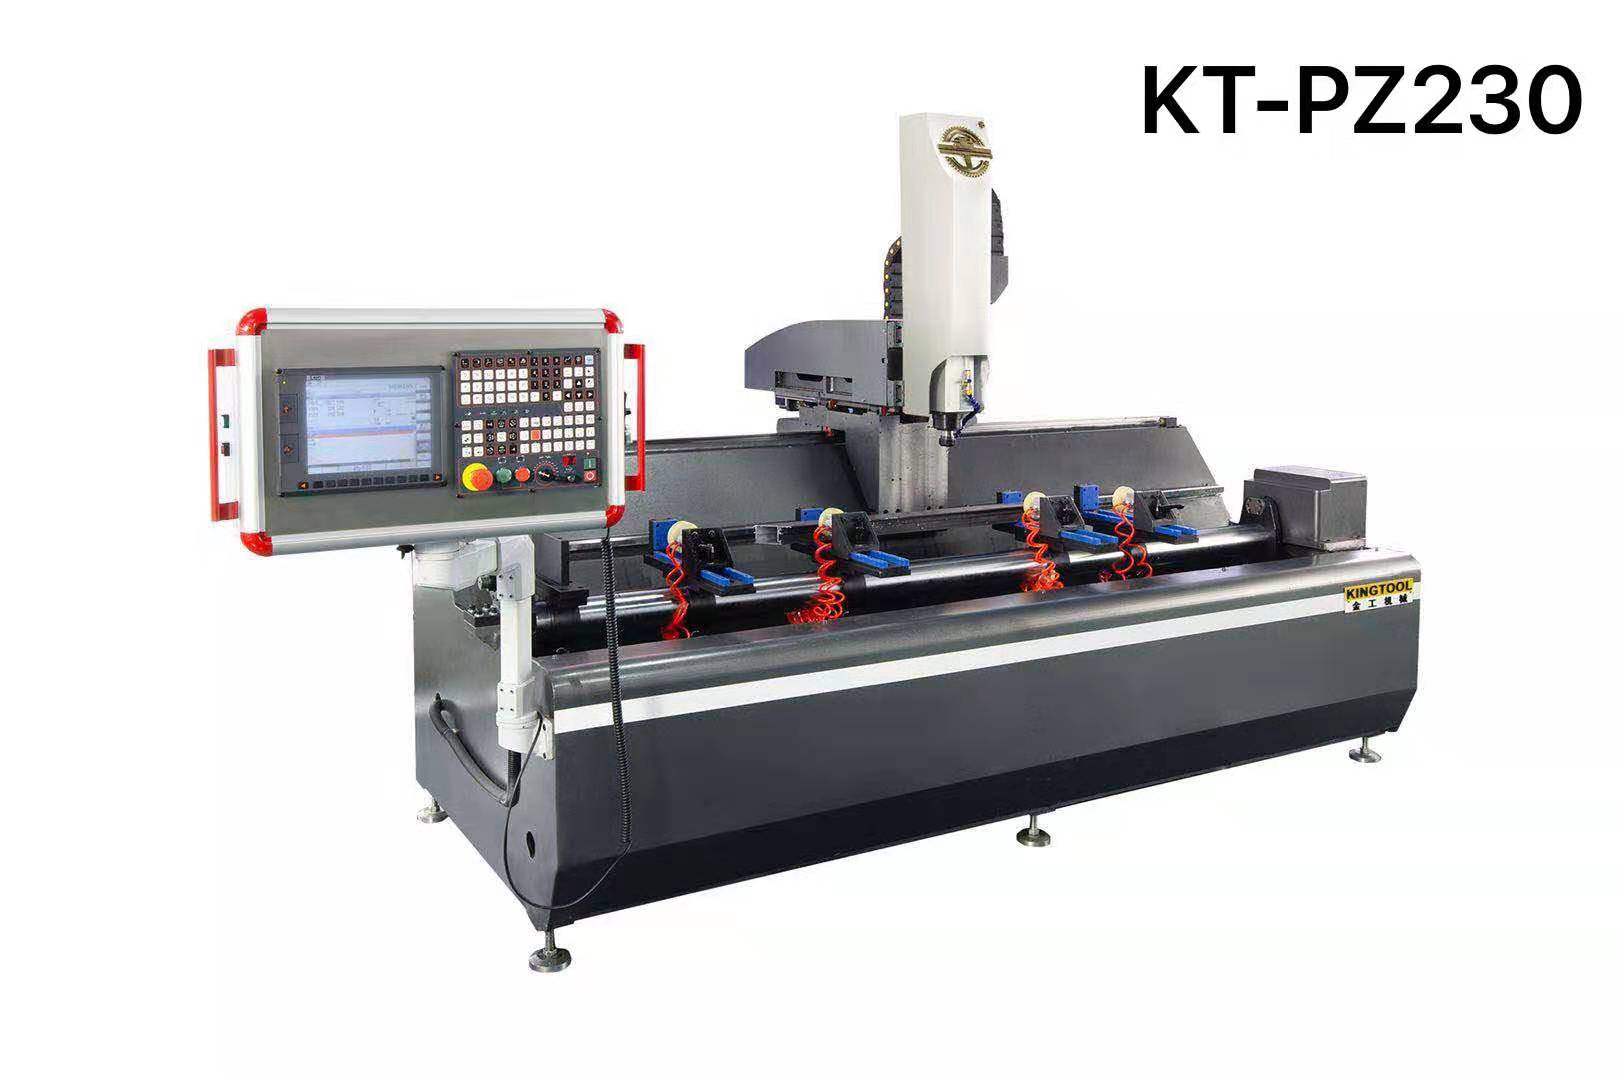 kingtool aluminium machinery Array image454